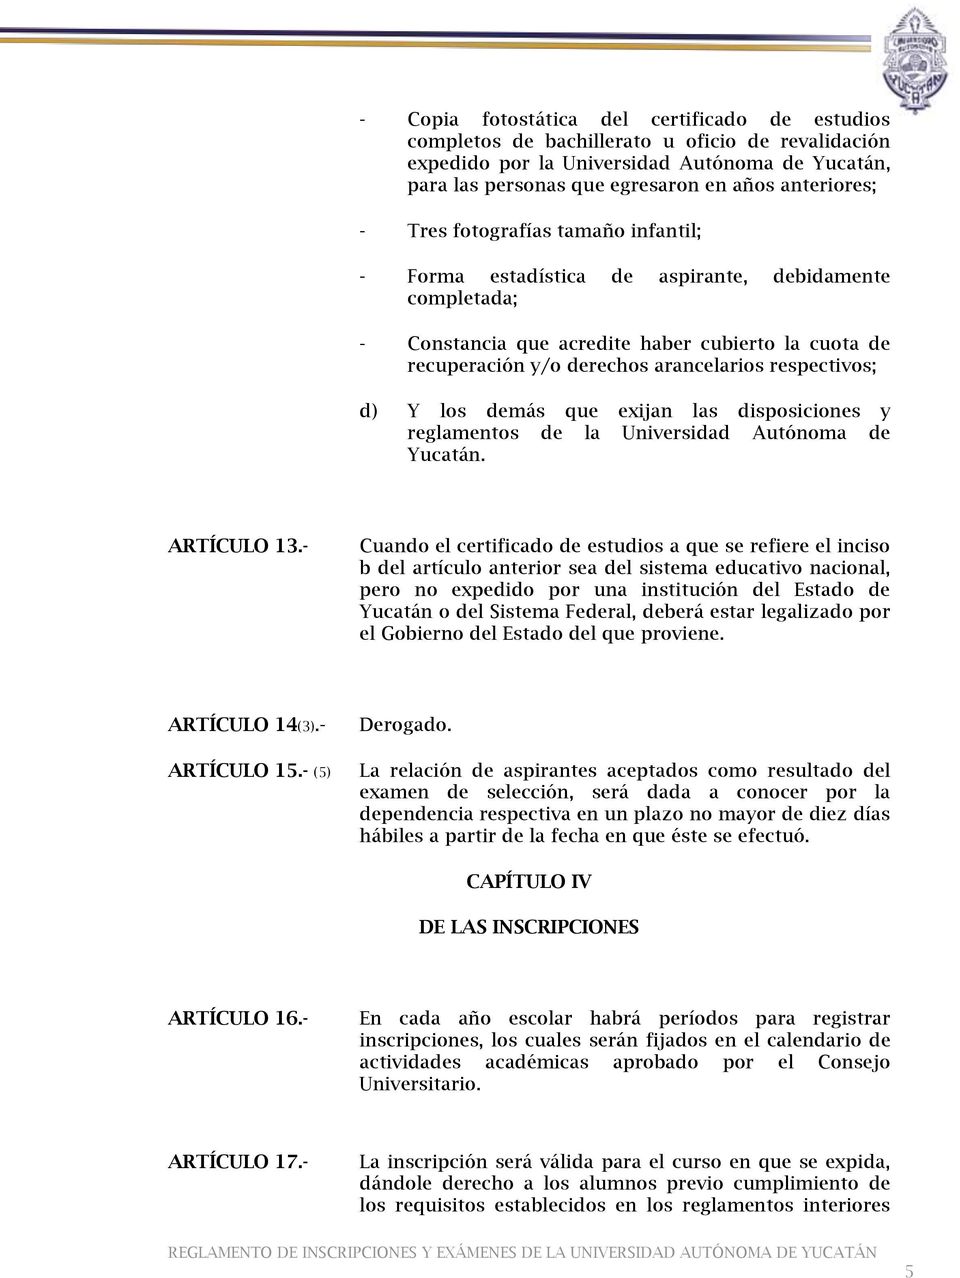 d) Y los demás que exijan las disposiciones y reglamentos de la Universidad Autónoma de Yucatán. ARTÍCULO 13.